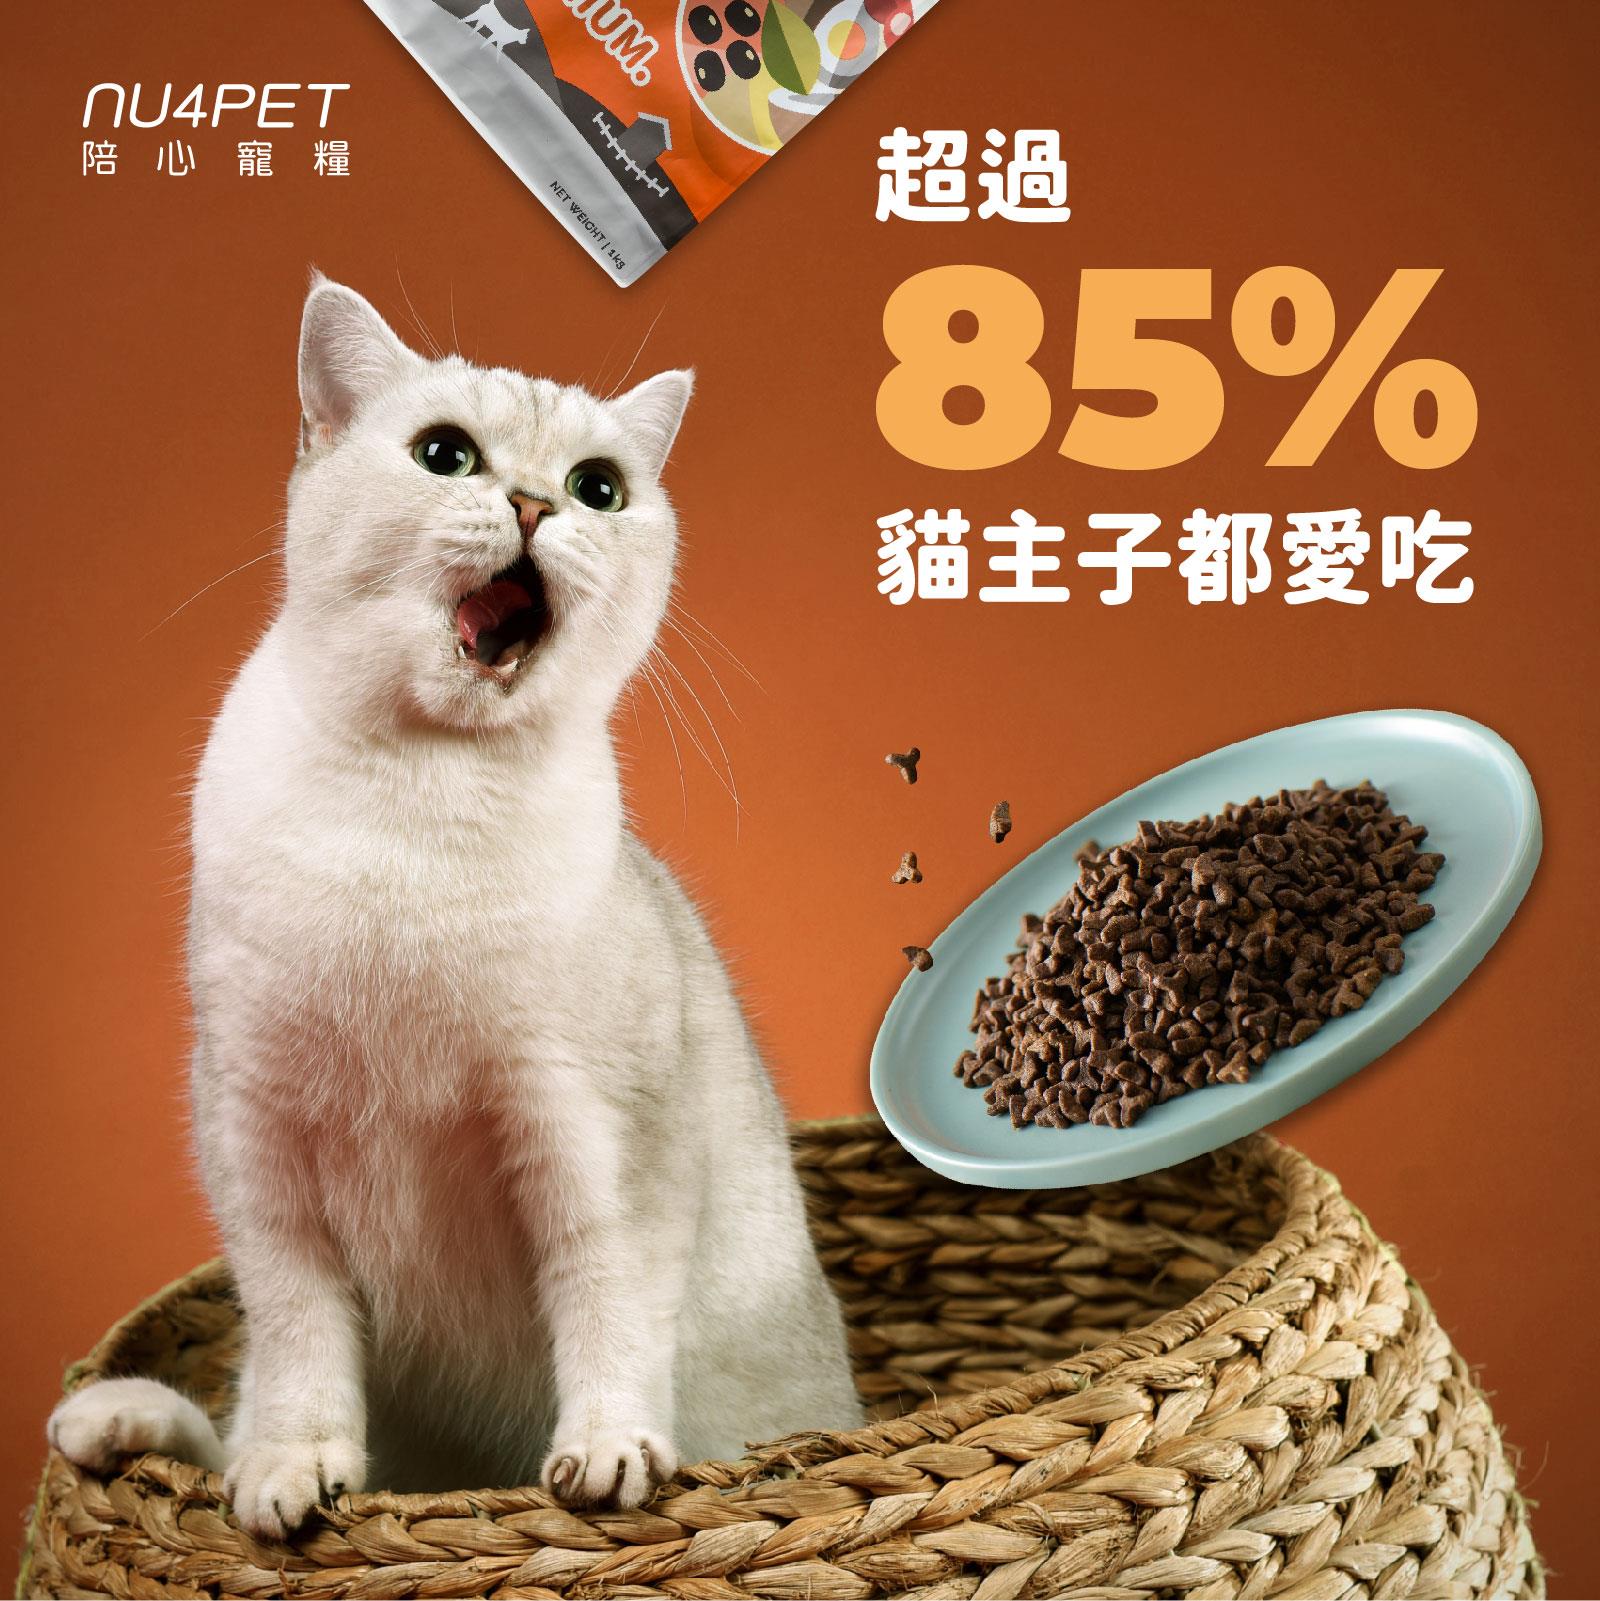 陪心寵糧- 全齡貓無穀低碳貓糧- 鮮雞野莓(1kg / 2kg / 6kg) - 寵物用品